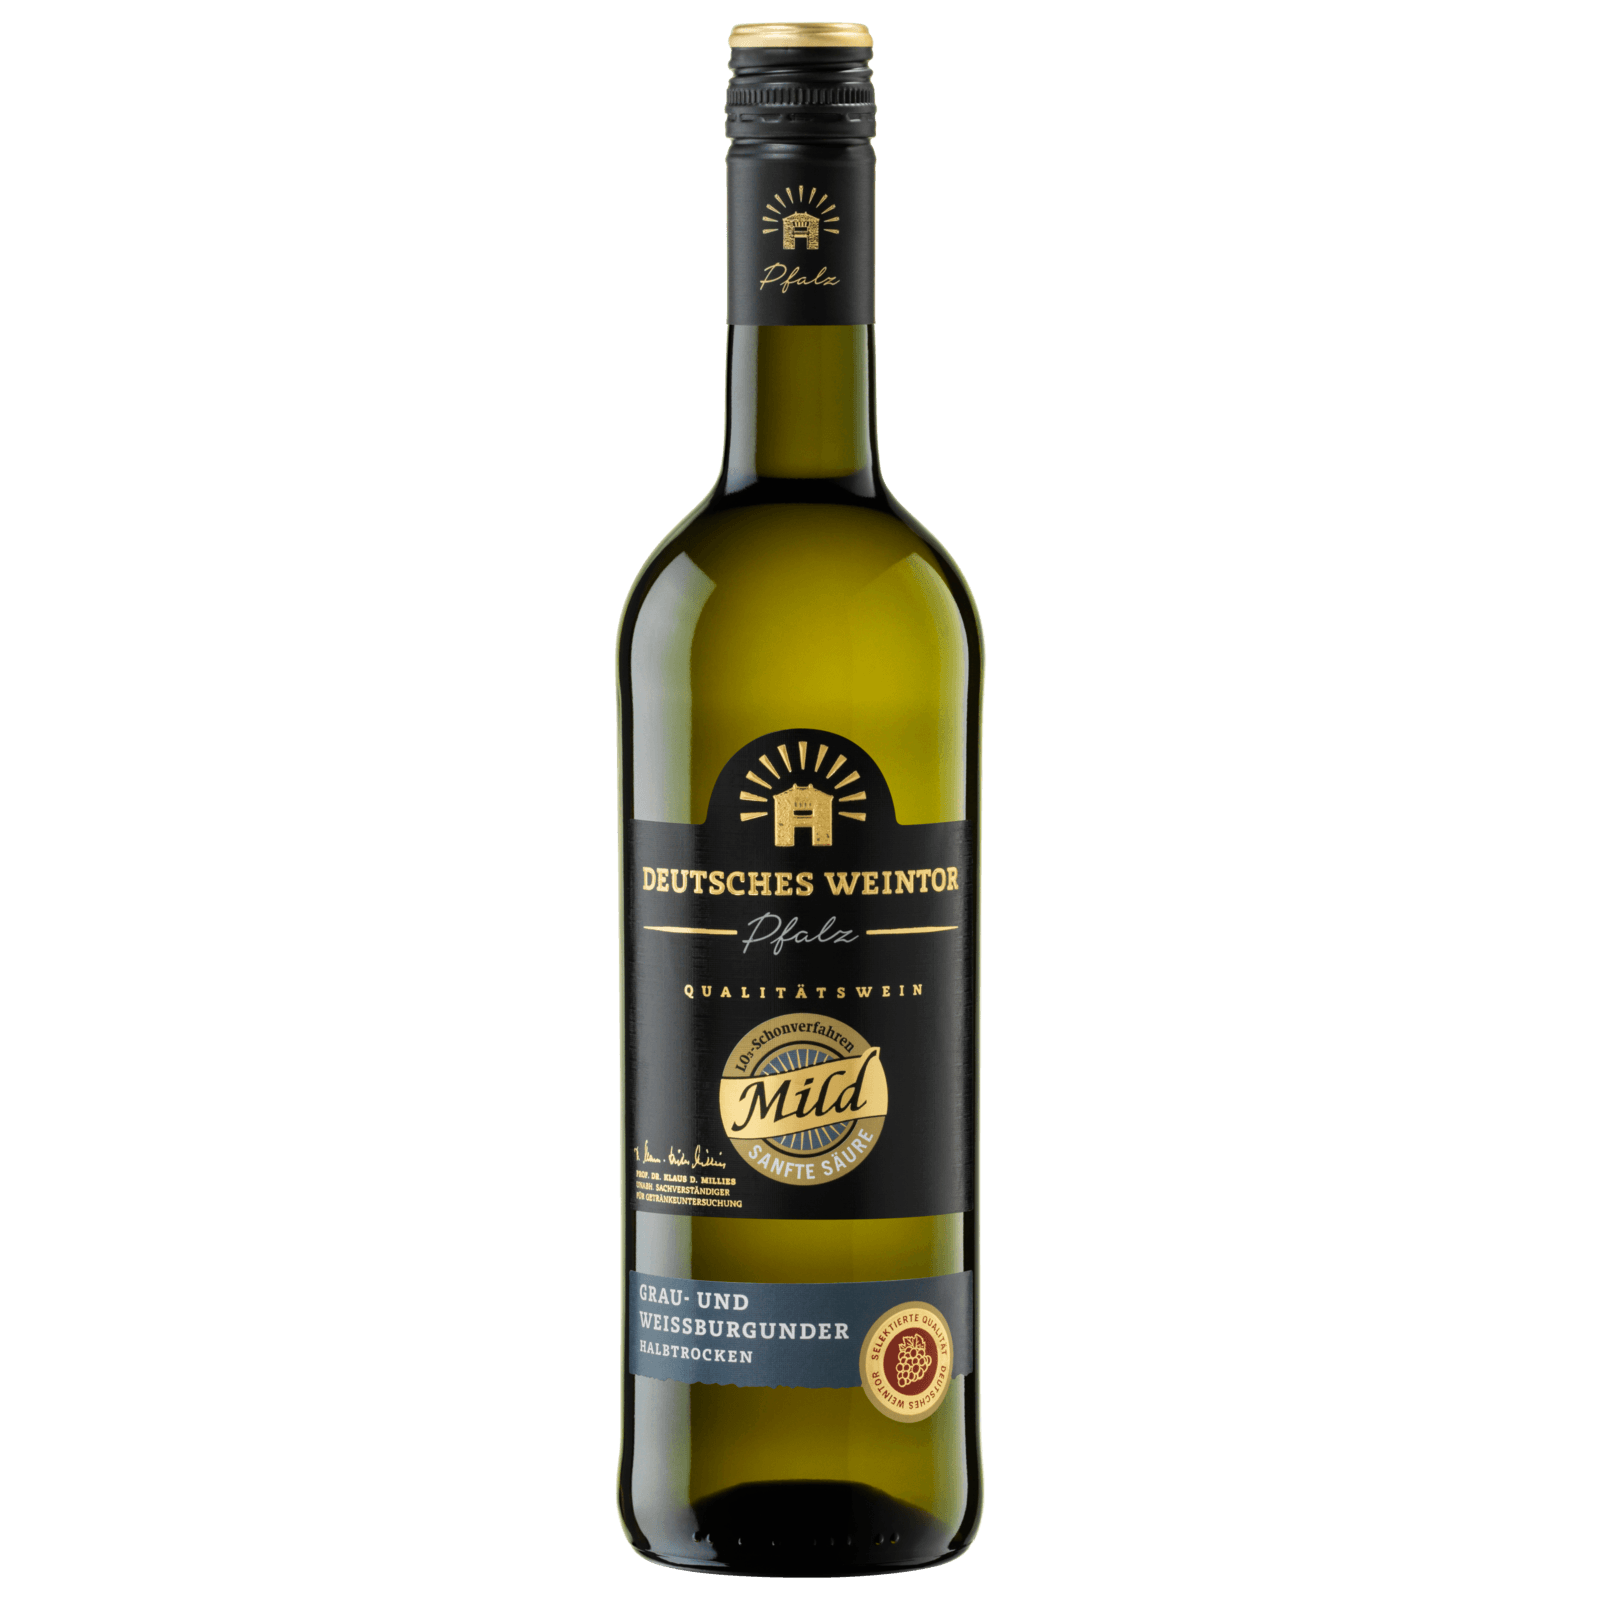 Deutsches Weintor Weißwein Grau- & Weißburgunder Edition Mild halbtrocken  0,75l bei REWE online bestellen!